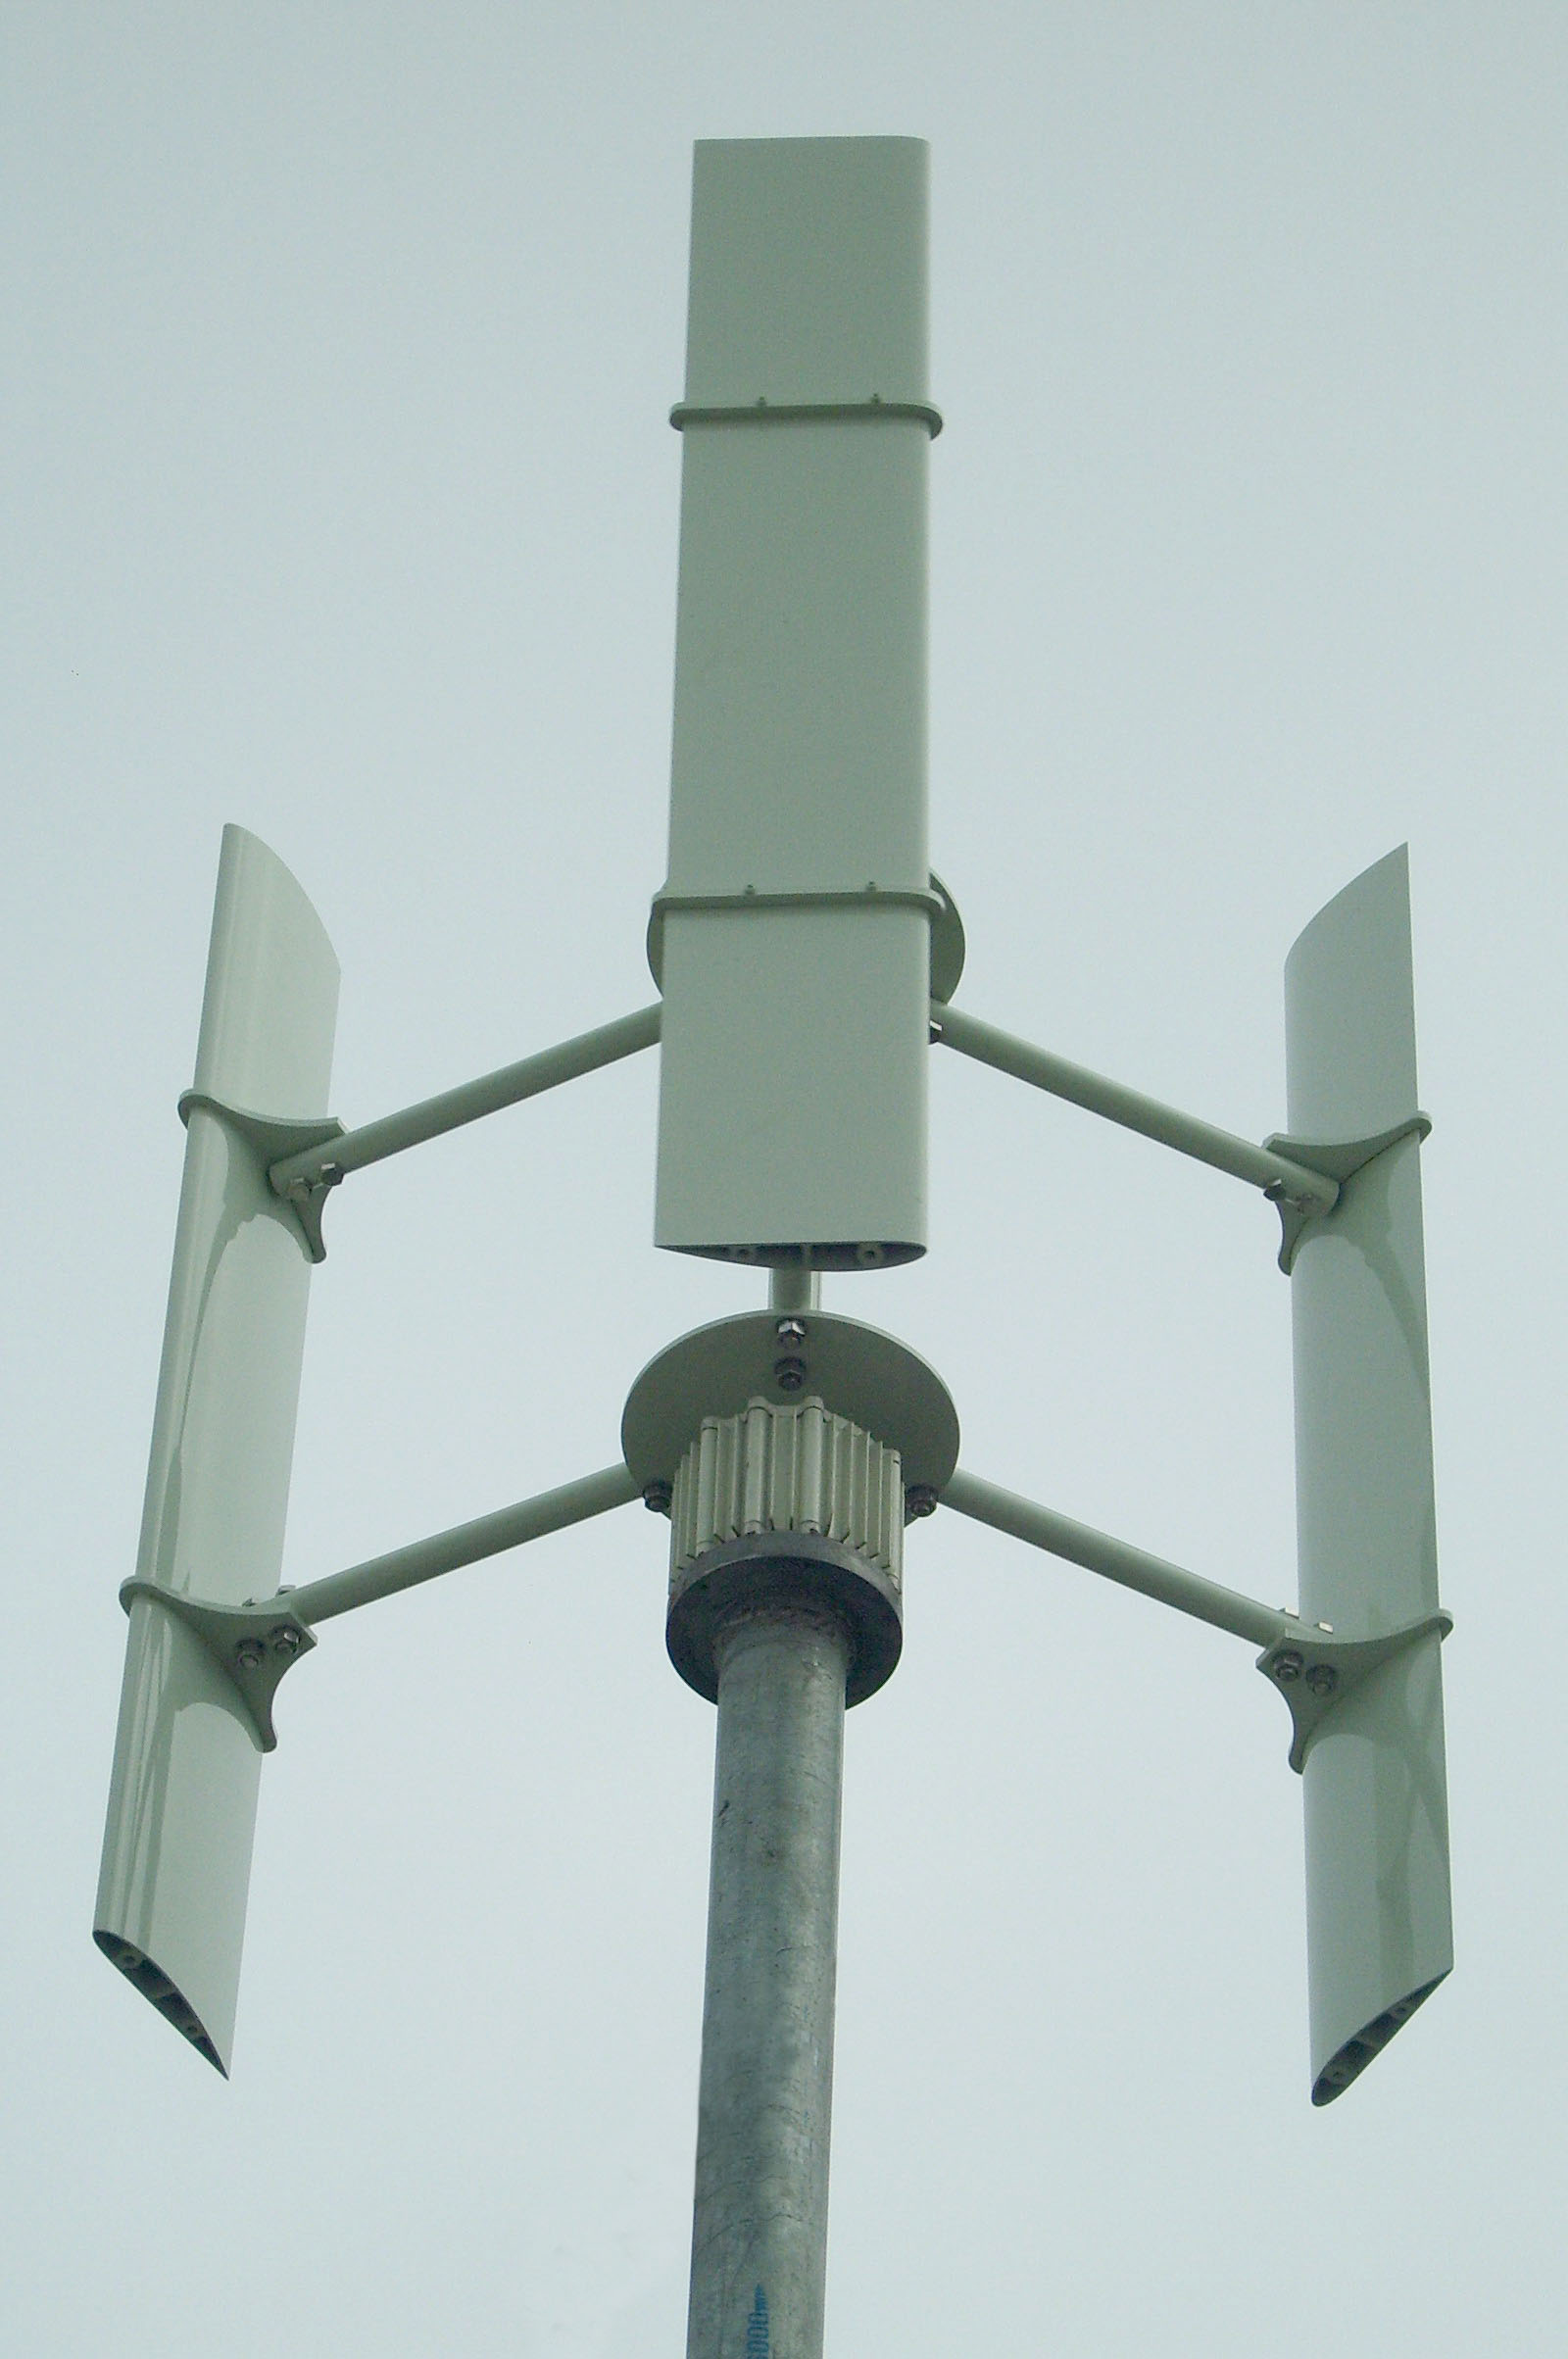 Vertical-axis wind turbine (BEN500)